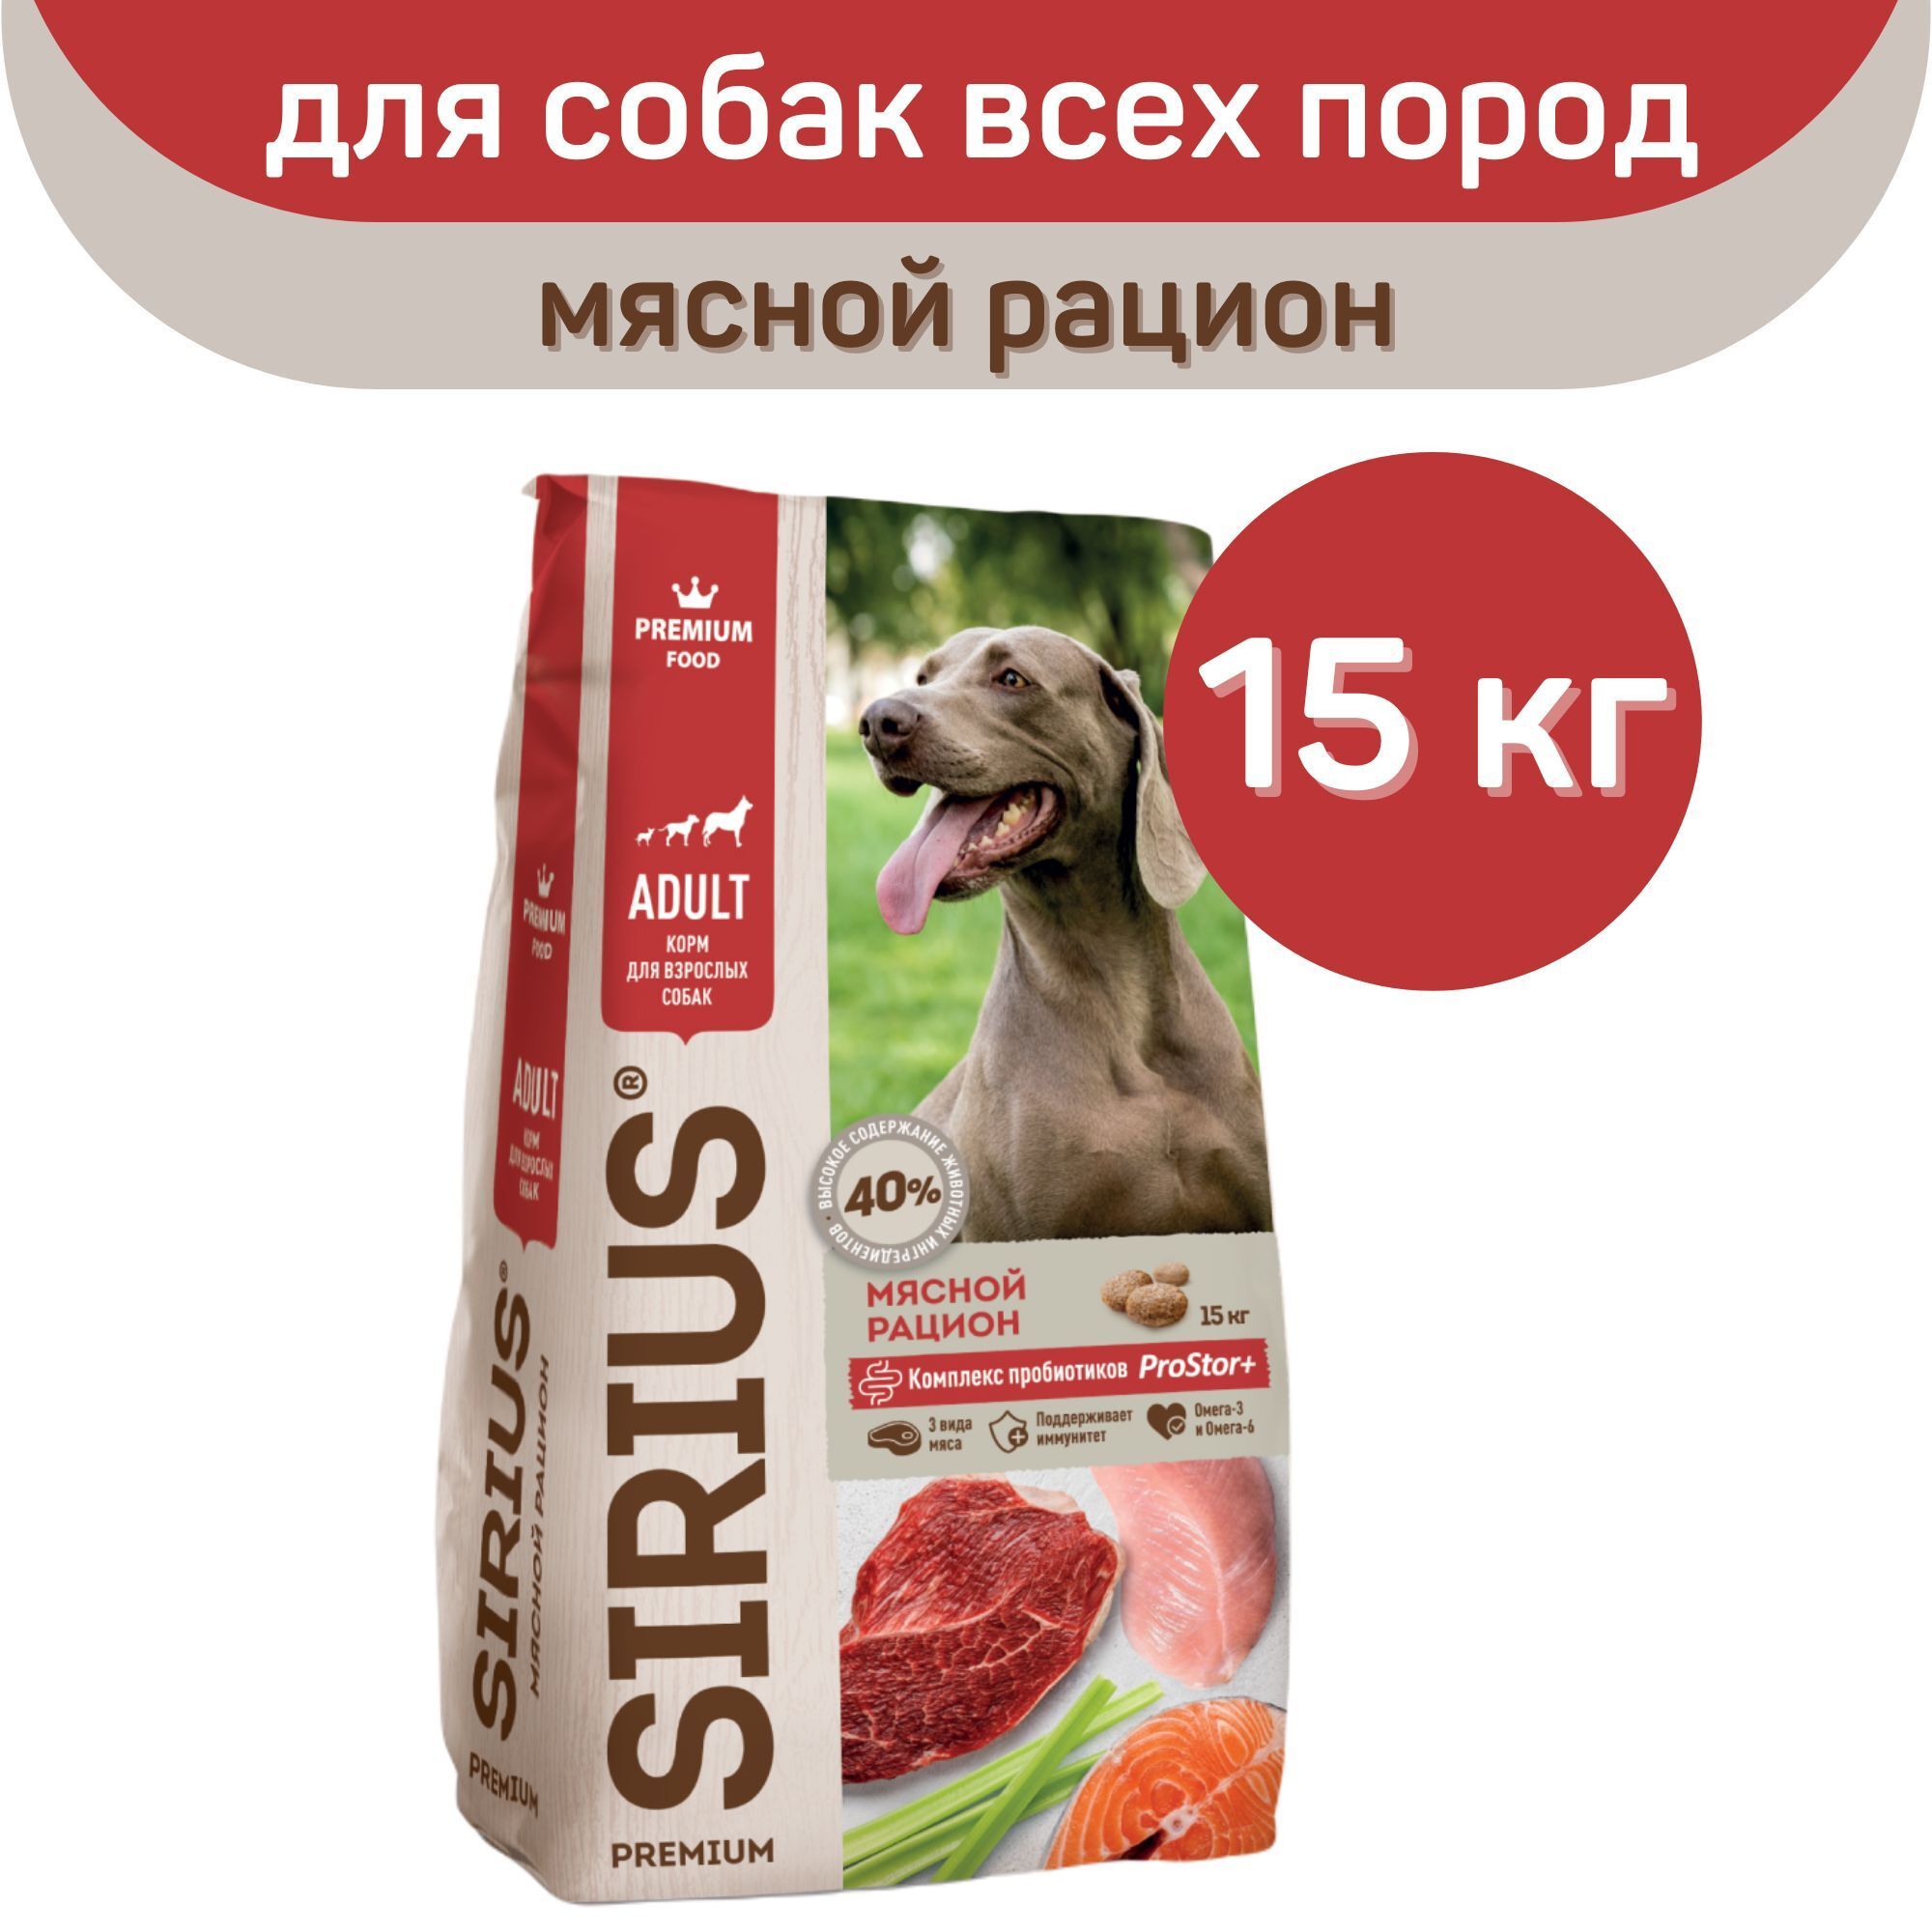 Корм сириус для собак 15 кг. Sirius сухой корм для собак 15 кг. Корм Сириус для щенков 15кг. Сухой корм для собак Сириус мясной рацион. Sirius корм для собак 15кг.